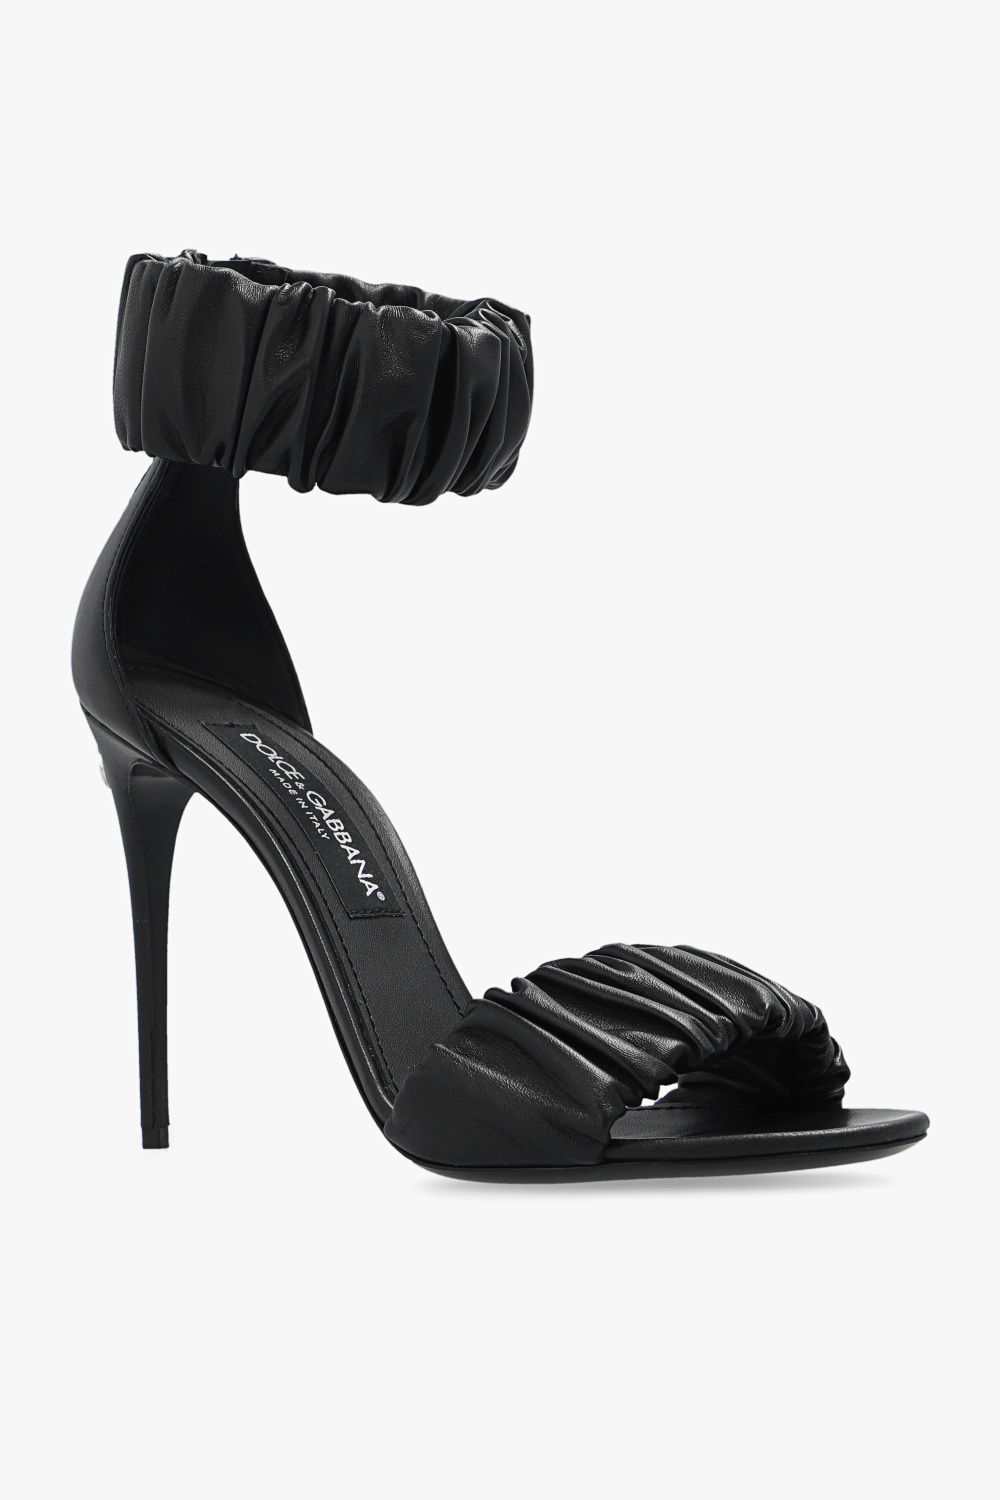 Юбка джинсовая деним dolce&gabbana ‘Keira’ heeled sandals